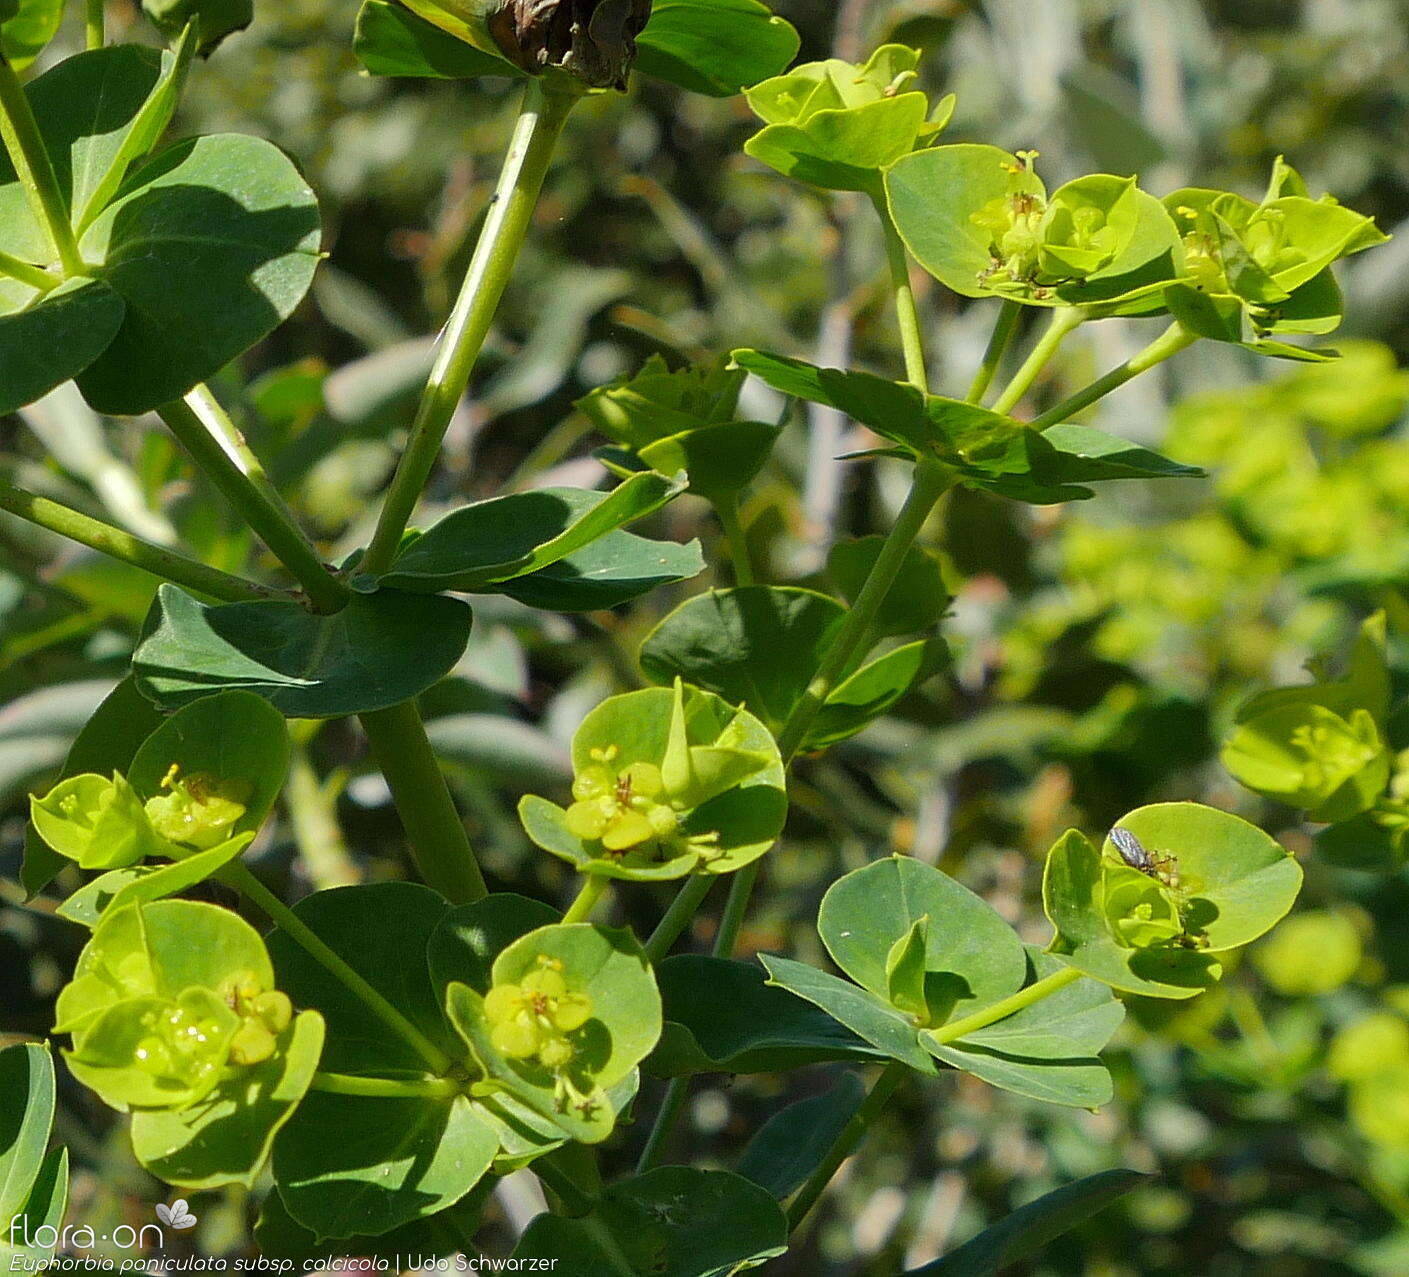 Euphorbia paniculata - Flor (geral) | Udo Schwarzer; CC BY-NC 4.0